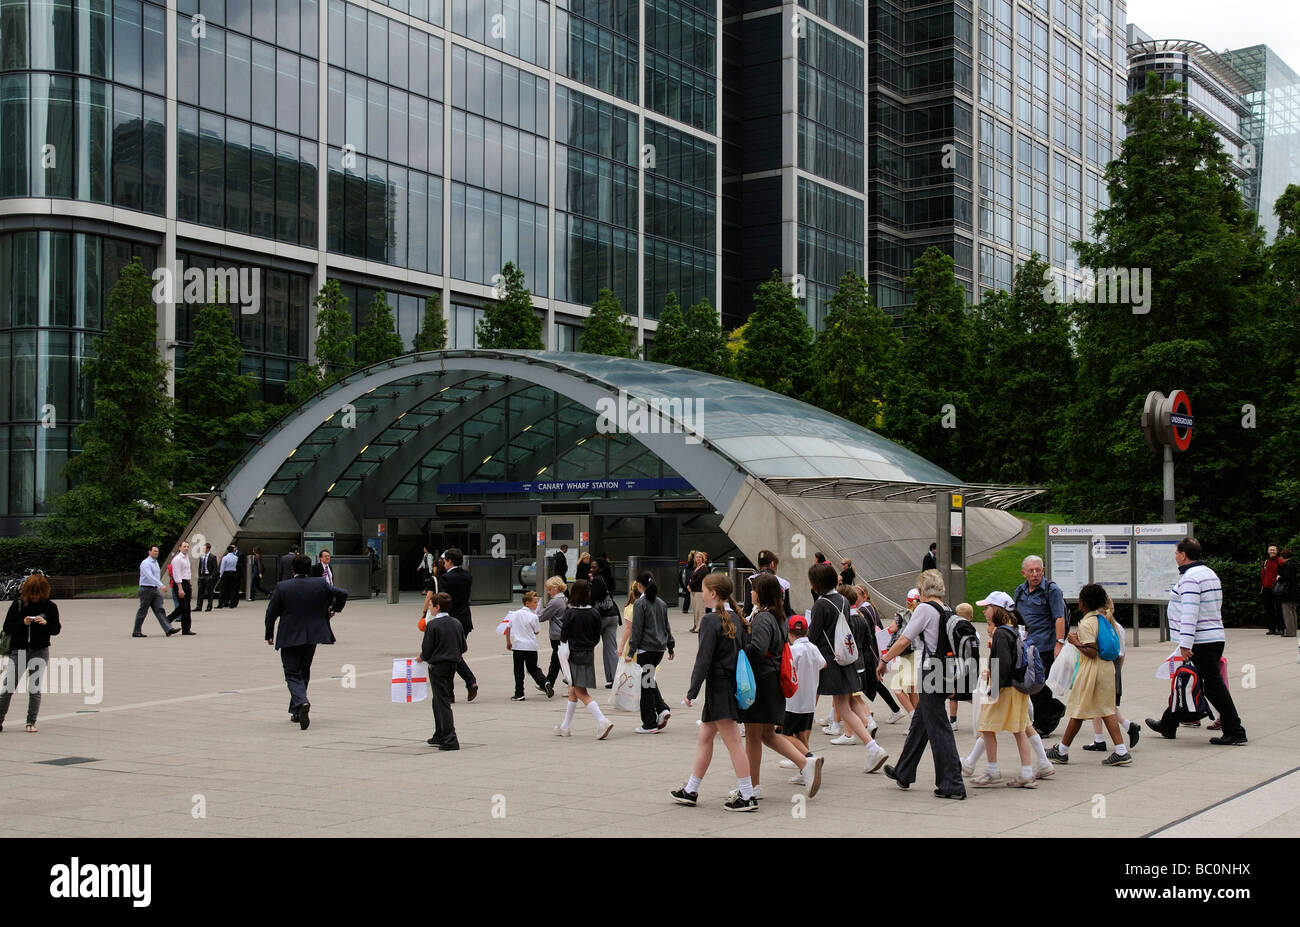 La station de métro Canary Wharf London UK les immeubles de bureaux et un groupe d'écoliers Banque D'Images